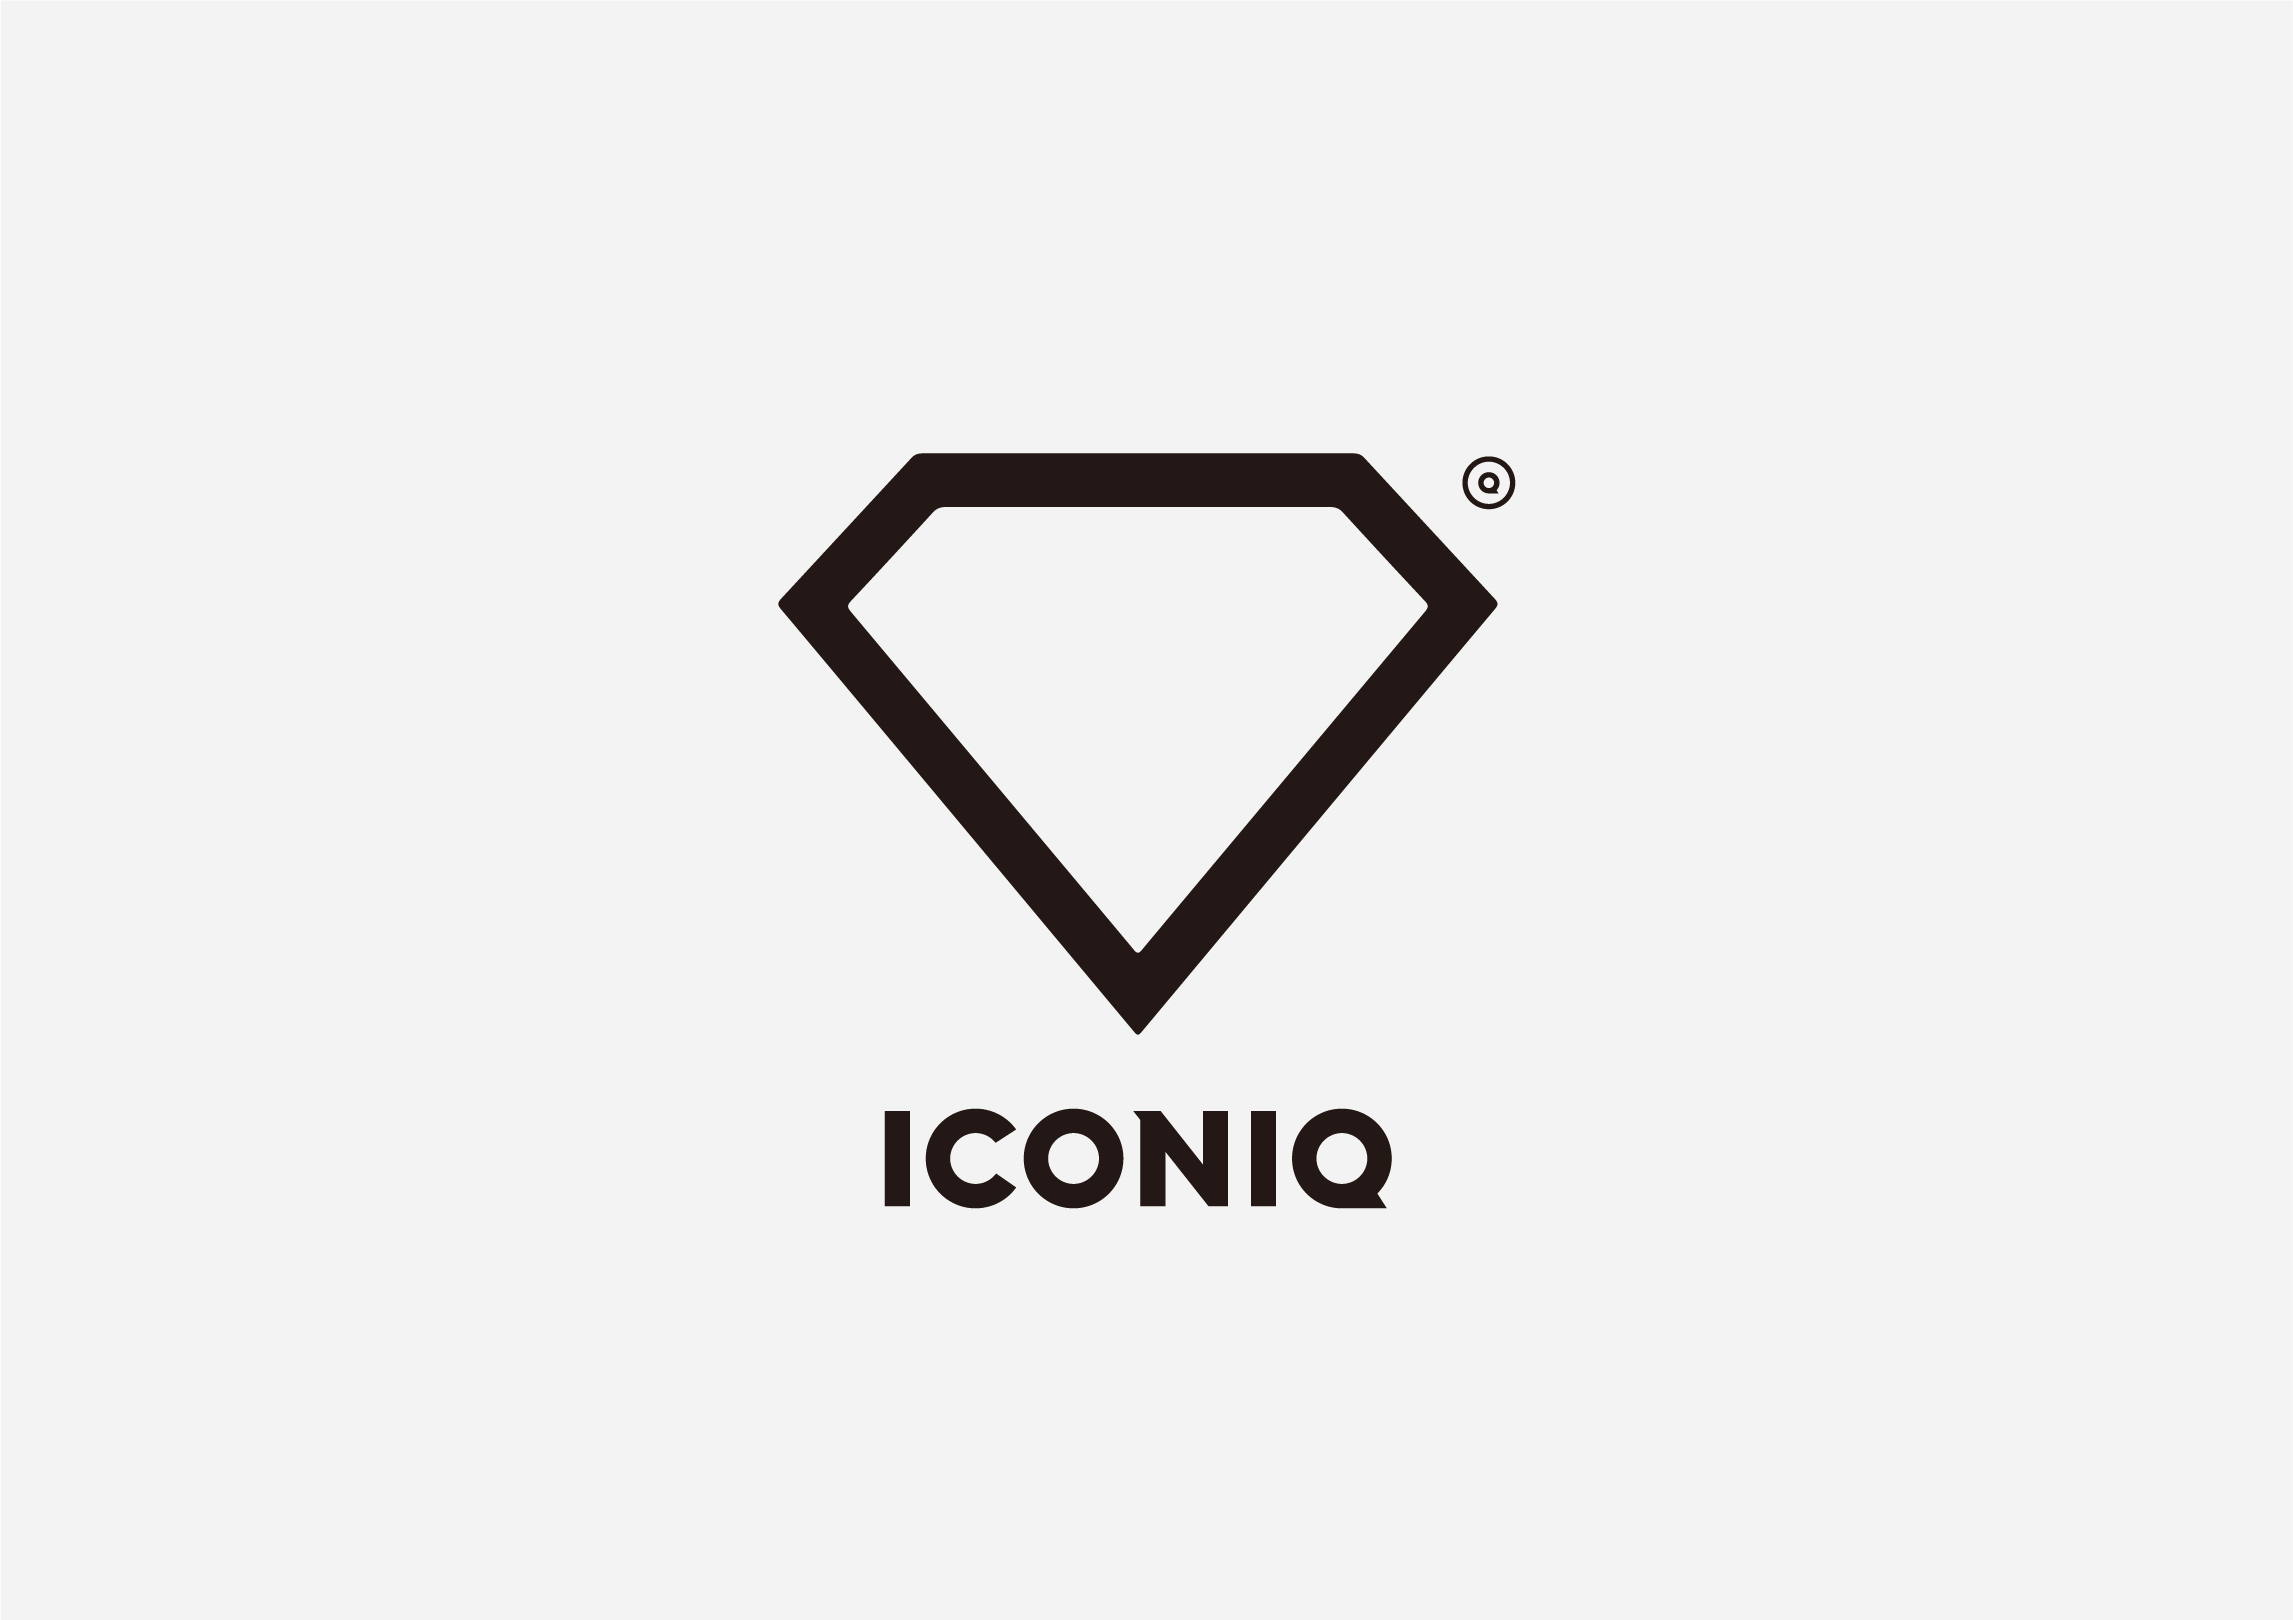 iconiq logo